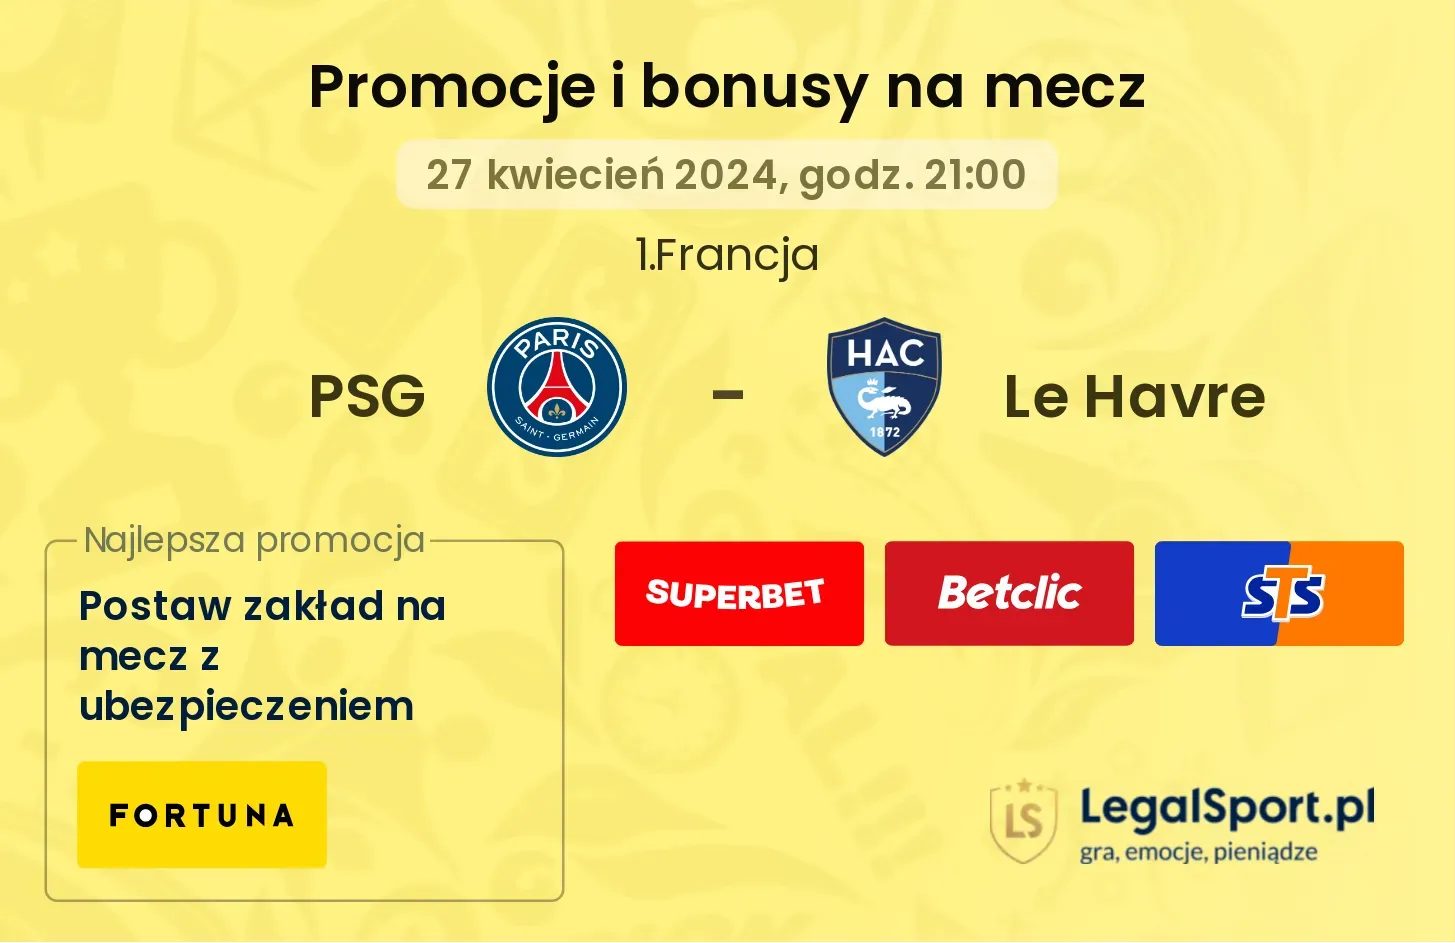 PSG - Le Havre promocje bonusy na mecz